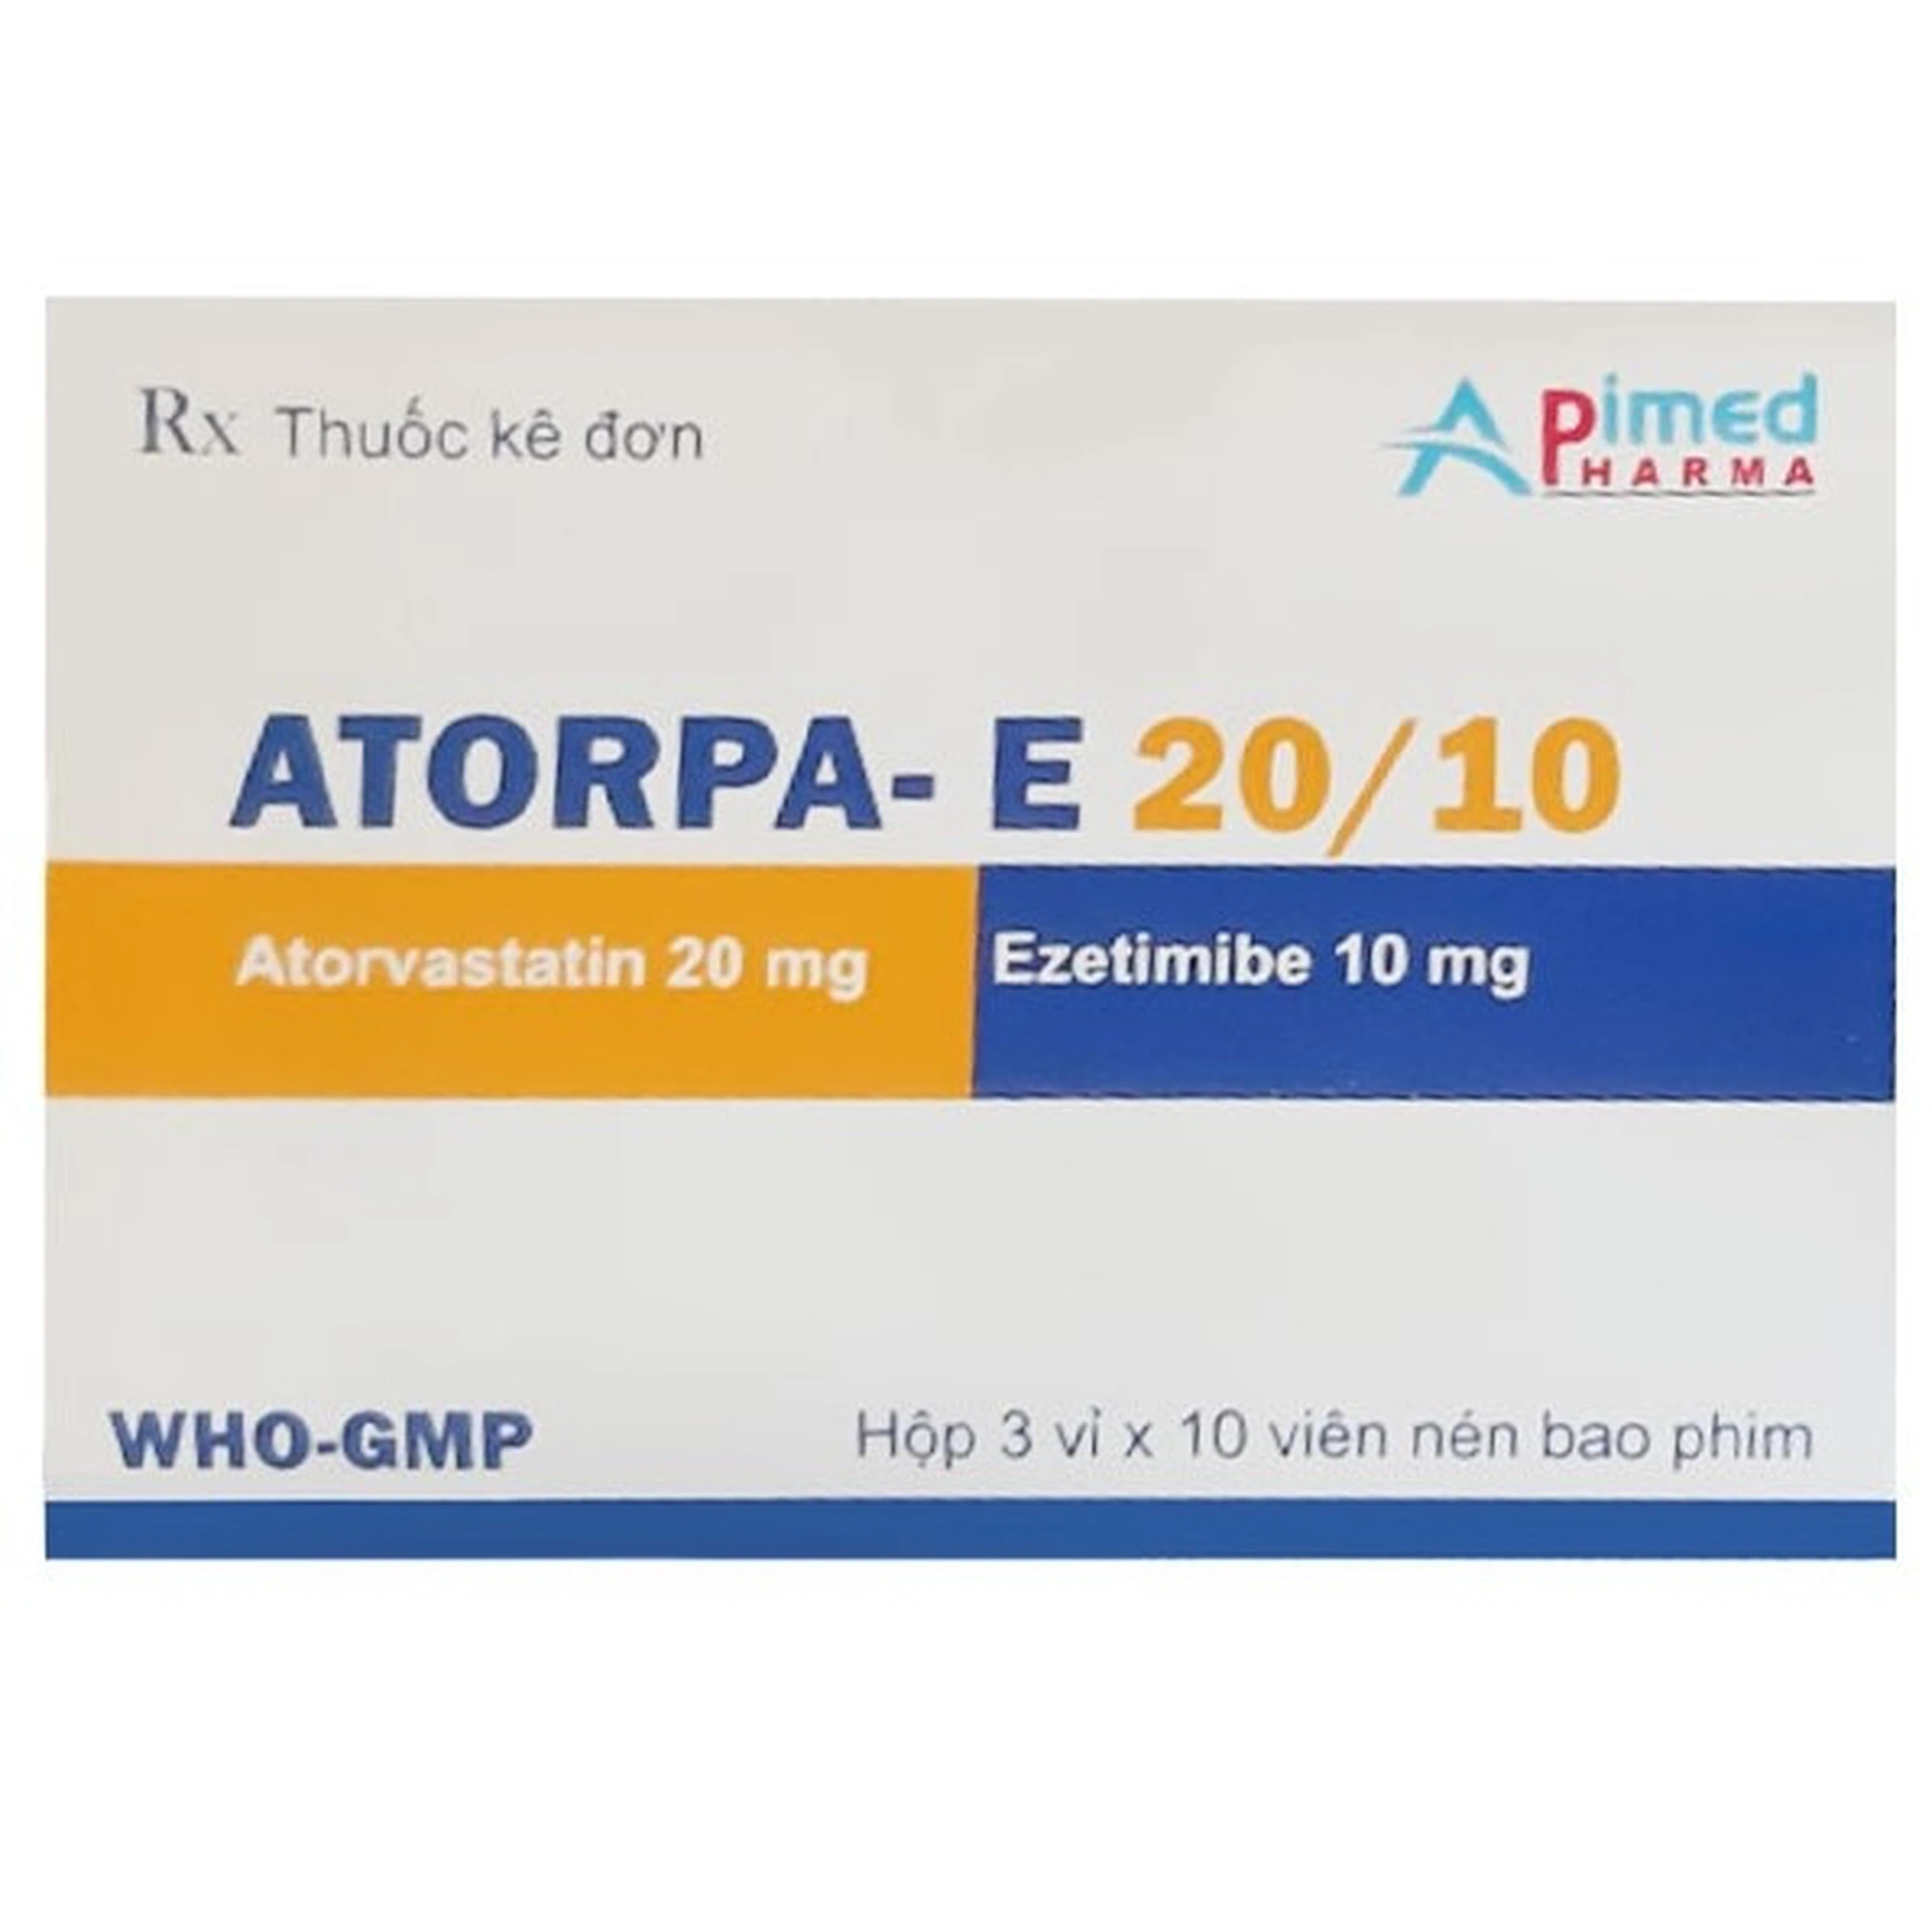 Thuốc Atorpa-E 20/10 Apimed phòng ngừa bệnh tim mạch và tăng cholesterol máu (3 vỉ x 10 viên)